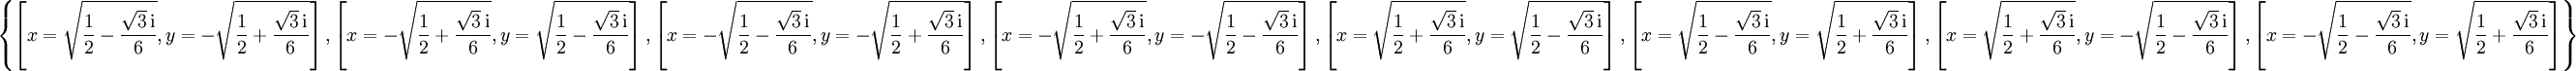 \left\{\left[x = \sqrt{\frac{1}{2} - \frac{\sqrt{3}\, \mathrm{i}}{6}},y = - \sqrt{\frac{1}{2} + \frac{\sqrt{3}\, \mathrm{i}}{6}}\right],\left[x = - \sqrt{\frac{1}{2} + \frac{\sqrt{3}\, \mathrm{i}}{6}},y = \sqrt{\frac{1}{2} - \frac{\sqrt{3}\, \mathrm{i}}{6}}\right],\left[x = - \sqrt{\frac{1}{2} - \frac{\sqrt{3}\, \mathrm{i}}{6}},y = - \sqrt{\frac{1}{2} + \frac{\sqrt{3}\, \mathrm{i}}{6}}\right],\left[x = - \sqrt{\frac{1}{2} + \frac{\sqrt{3}\, \mathrm{i}}{6}},y = - \sqrt{\frac{1}{2} - \frac{\sqrt{3}\, \mathrm{i}}{6}}\right],\left[x = \sqrt{\frac{1}{2} + \frac{\sqrt{3}\, \mathrm{i}}{6}},y = \sqrt{\frac{1}{2} - \frac{\sqrt{3}\, \mathrm{i}}{6}}\right],\left[x = \sqrt{\frac{1}{2} - \frac{\sqrt{3}\, \mathrm{i}}{6}},y = \sqrt{\frac{1}{2} + \frac{\sqrt{3}\, \mathrm{i}}{6}}\right],\left[x = \sqrt{\frac{1}{2} + \frac{\sqrt{3}\, \mathrm{i}}{6}},y = - \sqrt{\frac{1}{2} - \frac{\sqrt{3}\, \mathrm{i}}{6}}\right],\left[x = - \sqrt{\frac{1}{2} - \frac{\sqrt{3}\, \mathrm{i}}{6}},y = \sqrt{\frac{1}{2} + \frac{\sqrt{3}\, \mathrm{i}}{6}}\right]\right\}